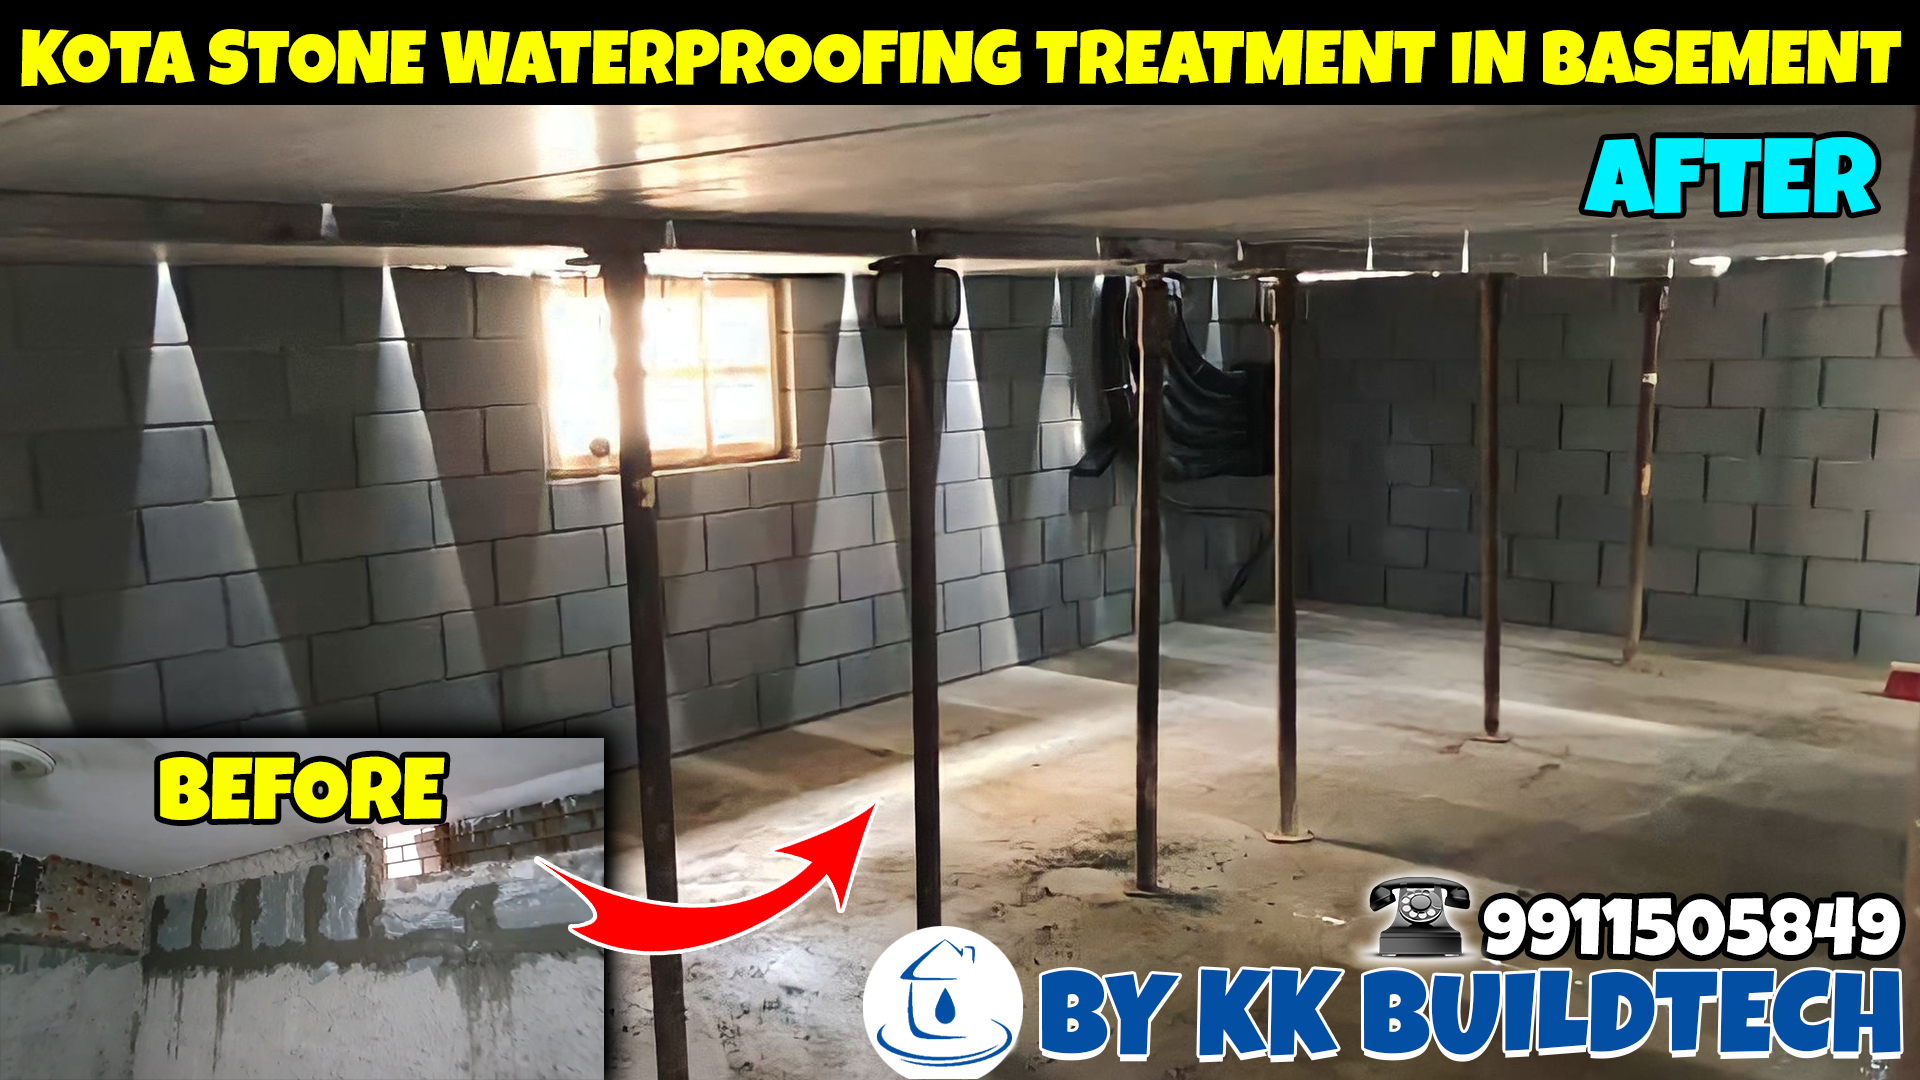 Kota stone Waterproofing treatment in basement